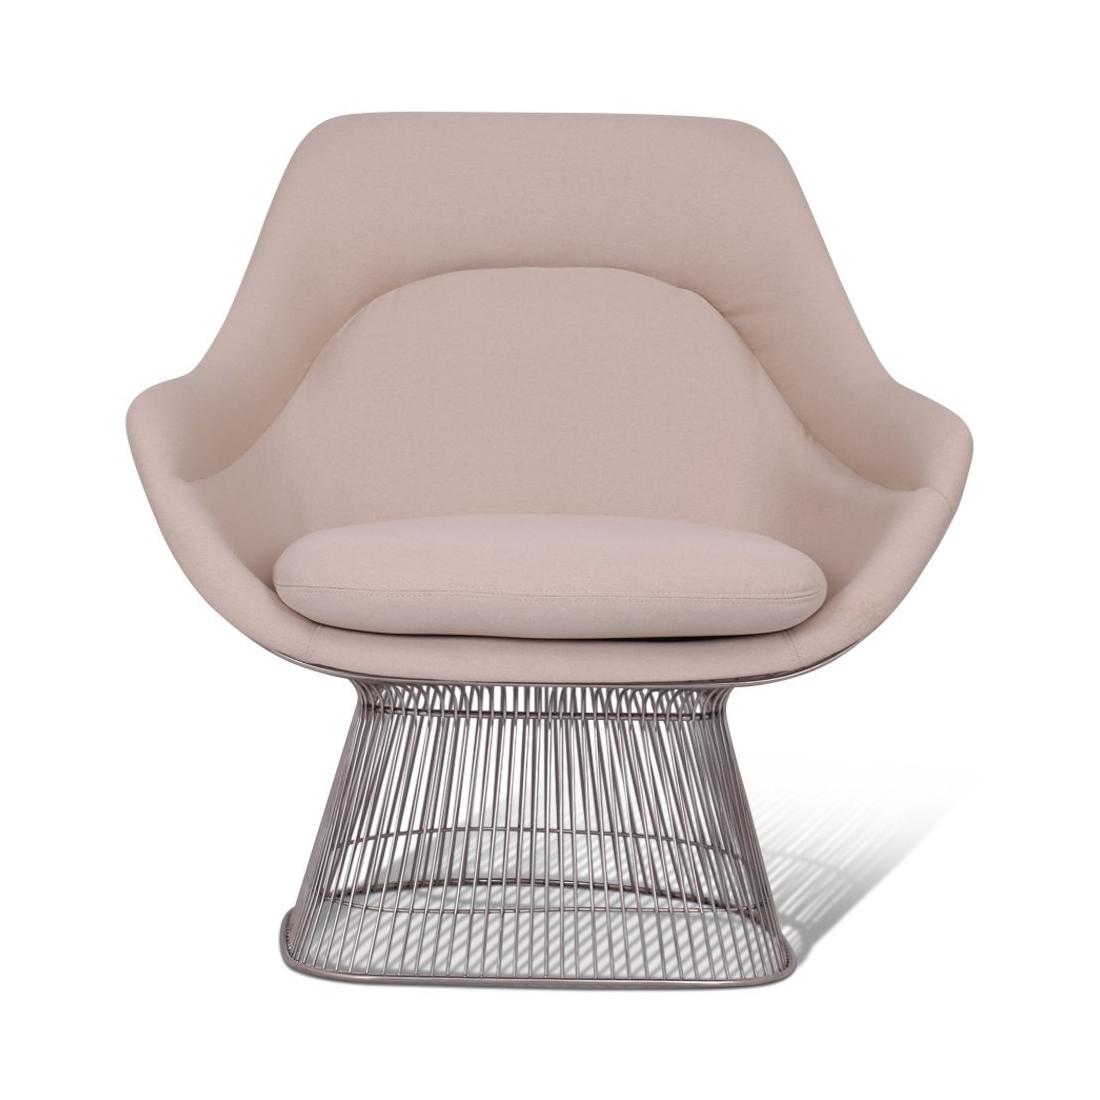 Warren Platner Easy Chair - Chrome Base - Eternity Modern